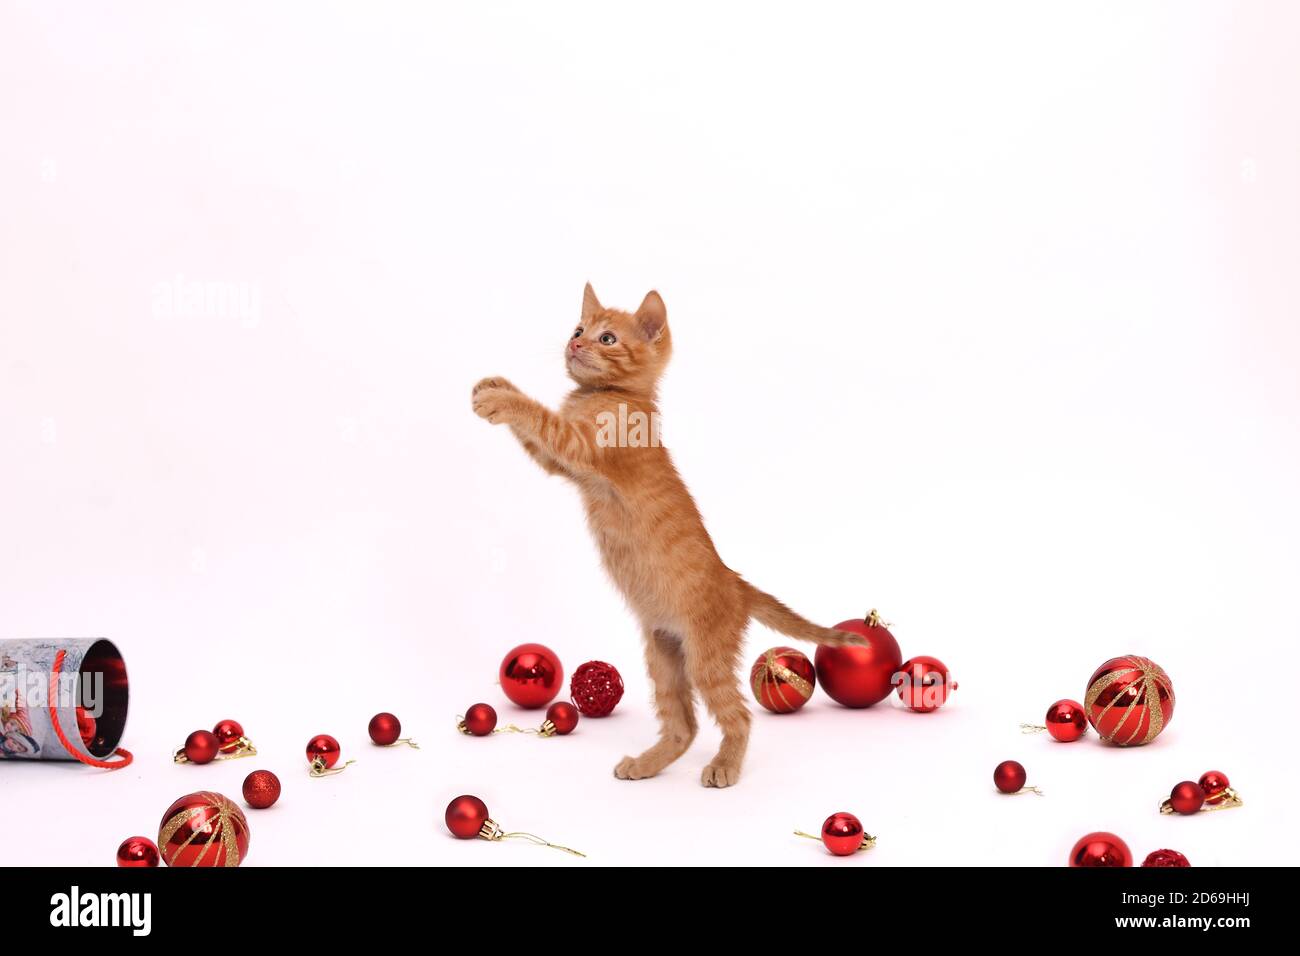 Rot verspieltes Kätzchen steht auf seinen Hinterbeinen auf weißem Hintergrund, rote Weihnachtskugeln liegen herum. Stockfoto